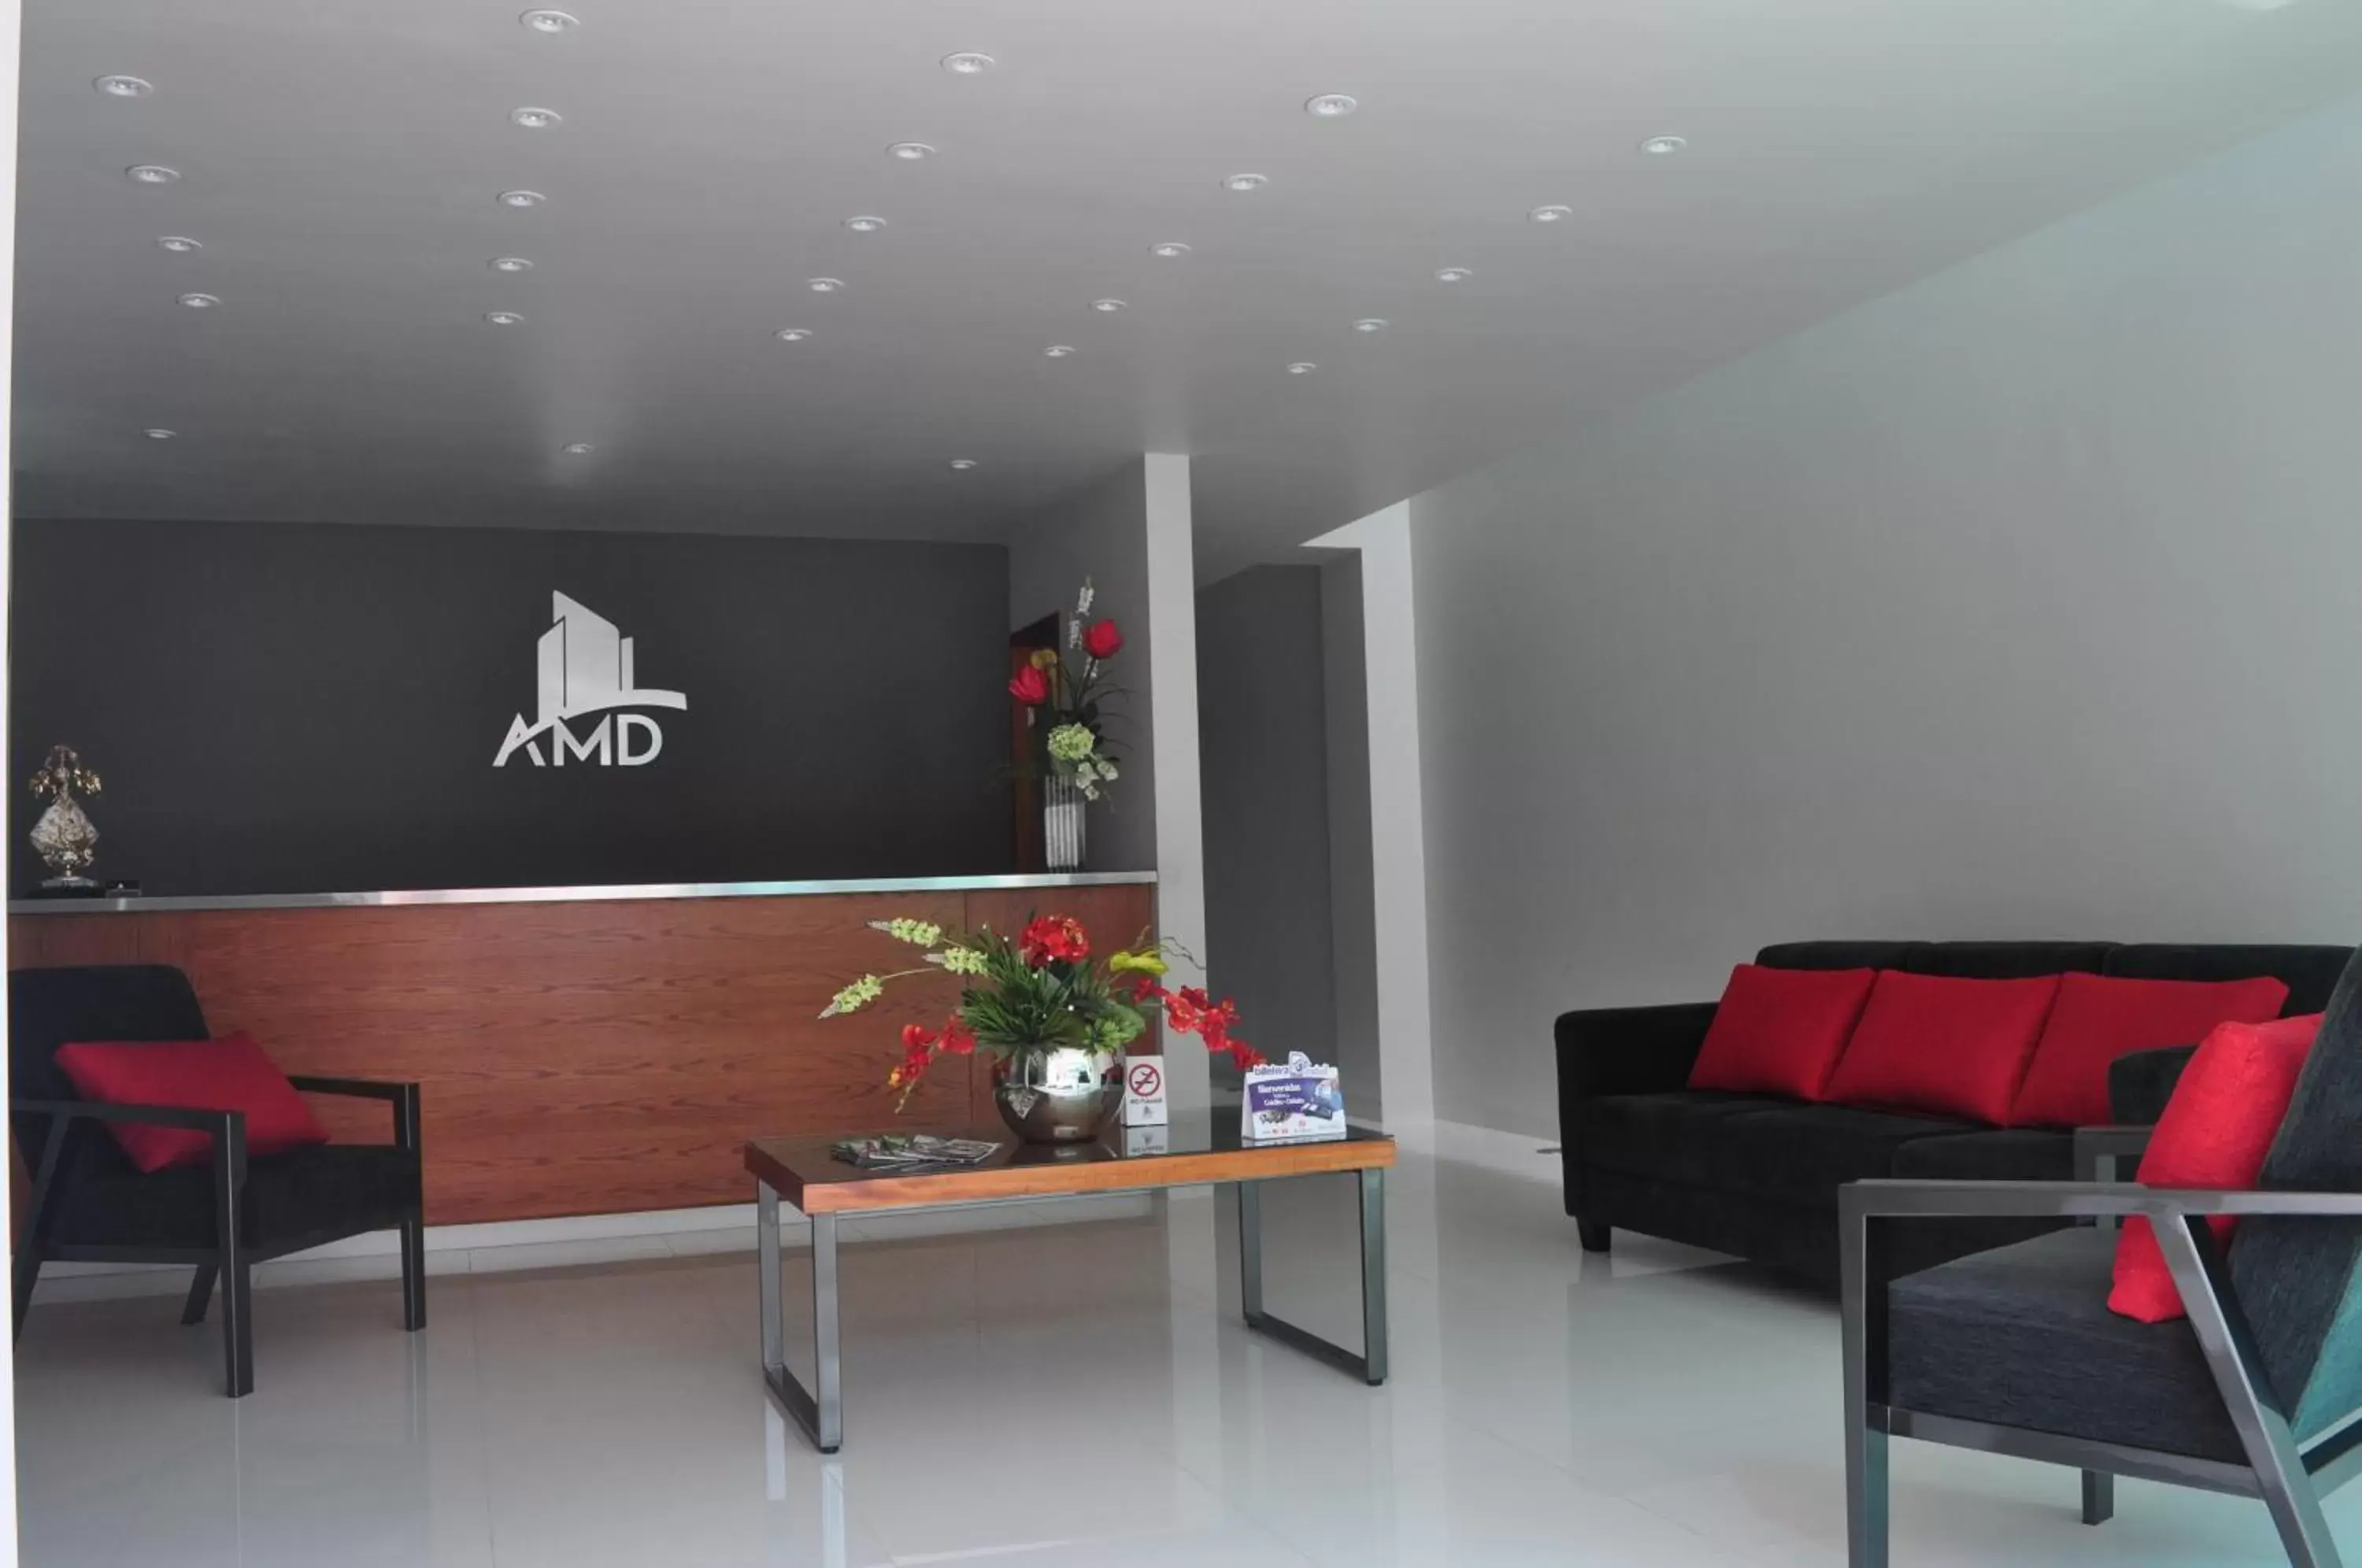 Lounge or bar, Lobby/Reception in AMD Hotel